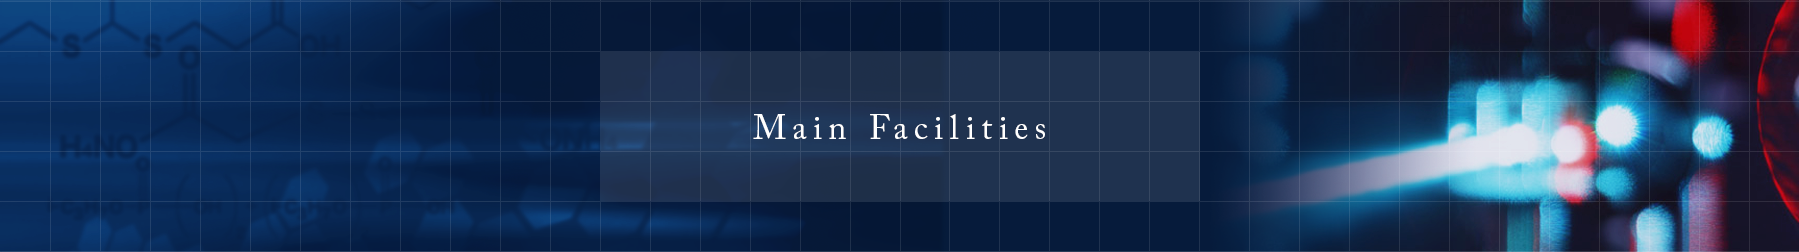 Main Facilities